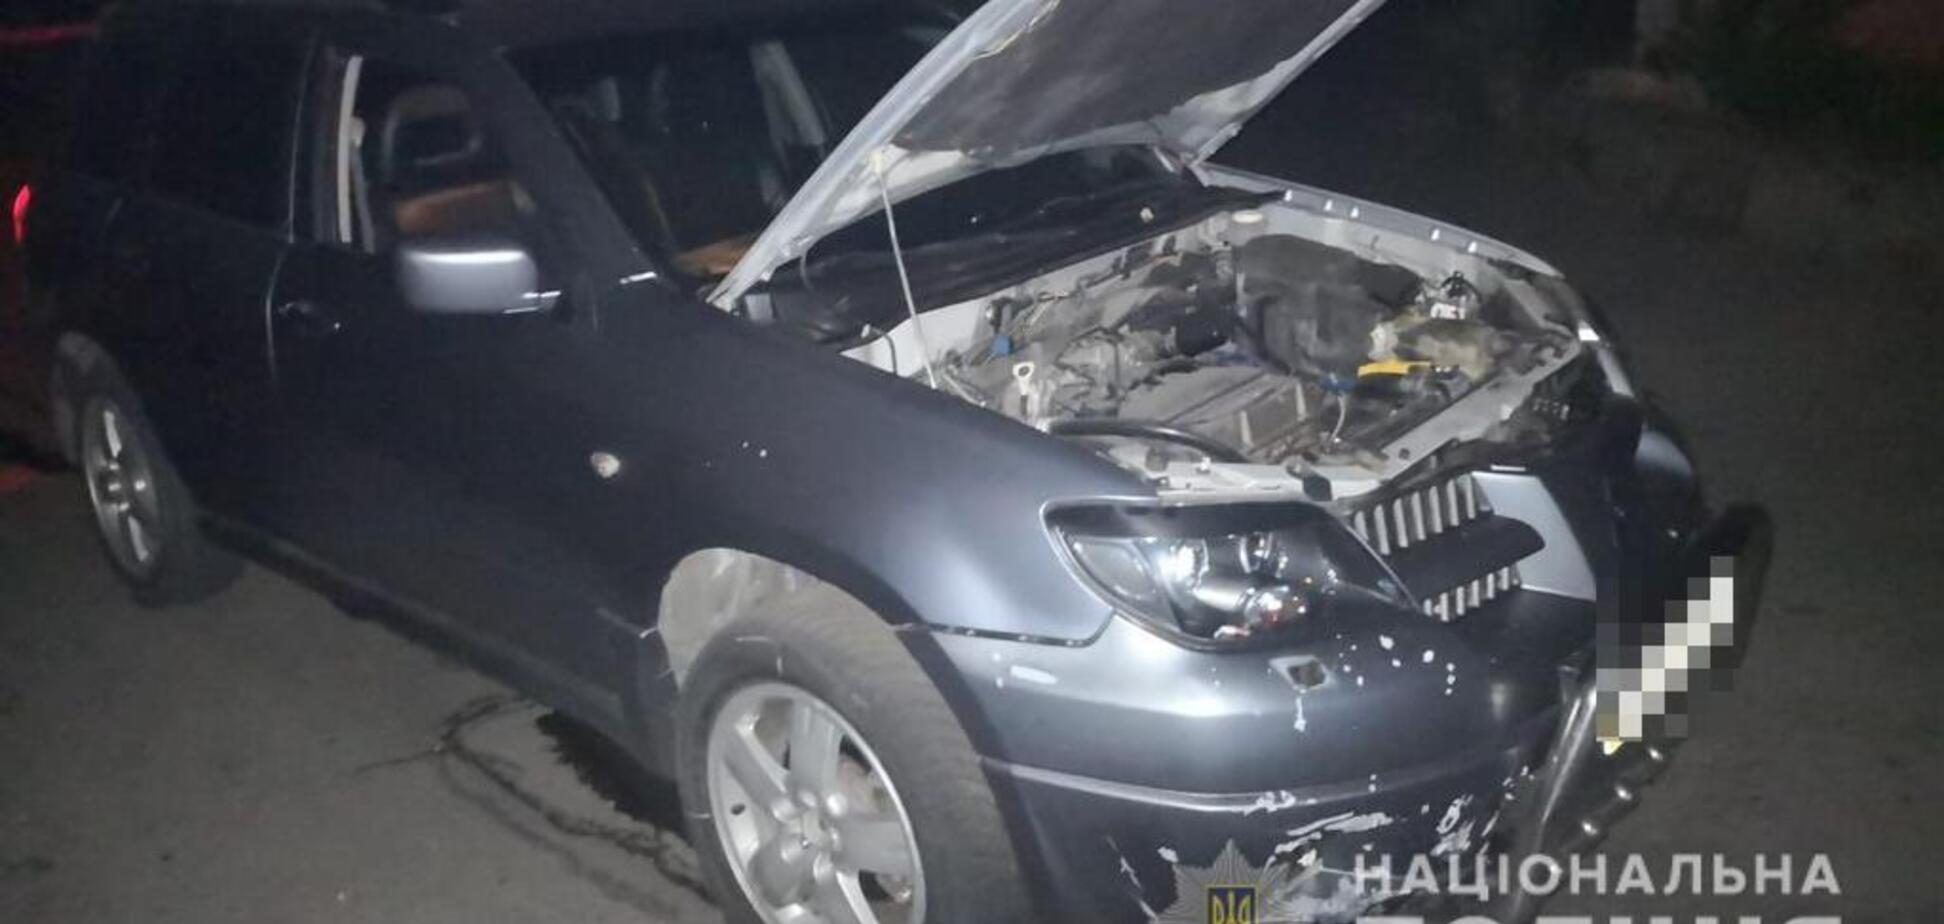 Покушение на бизнесмена: в Никополе мужчина бросил гранату под авто